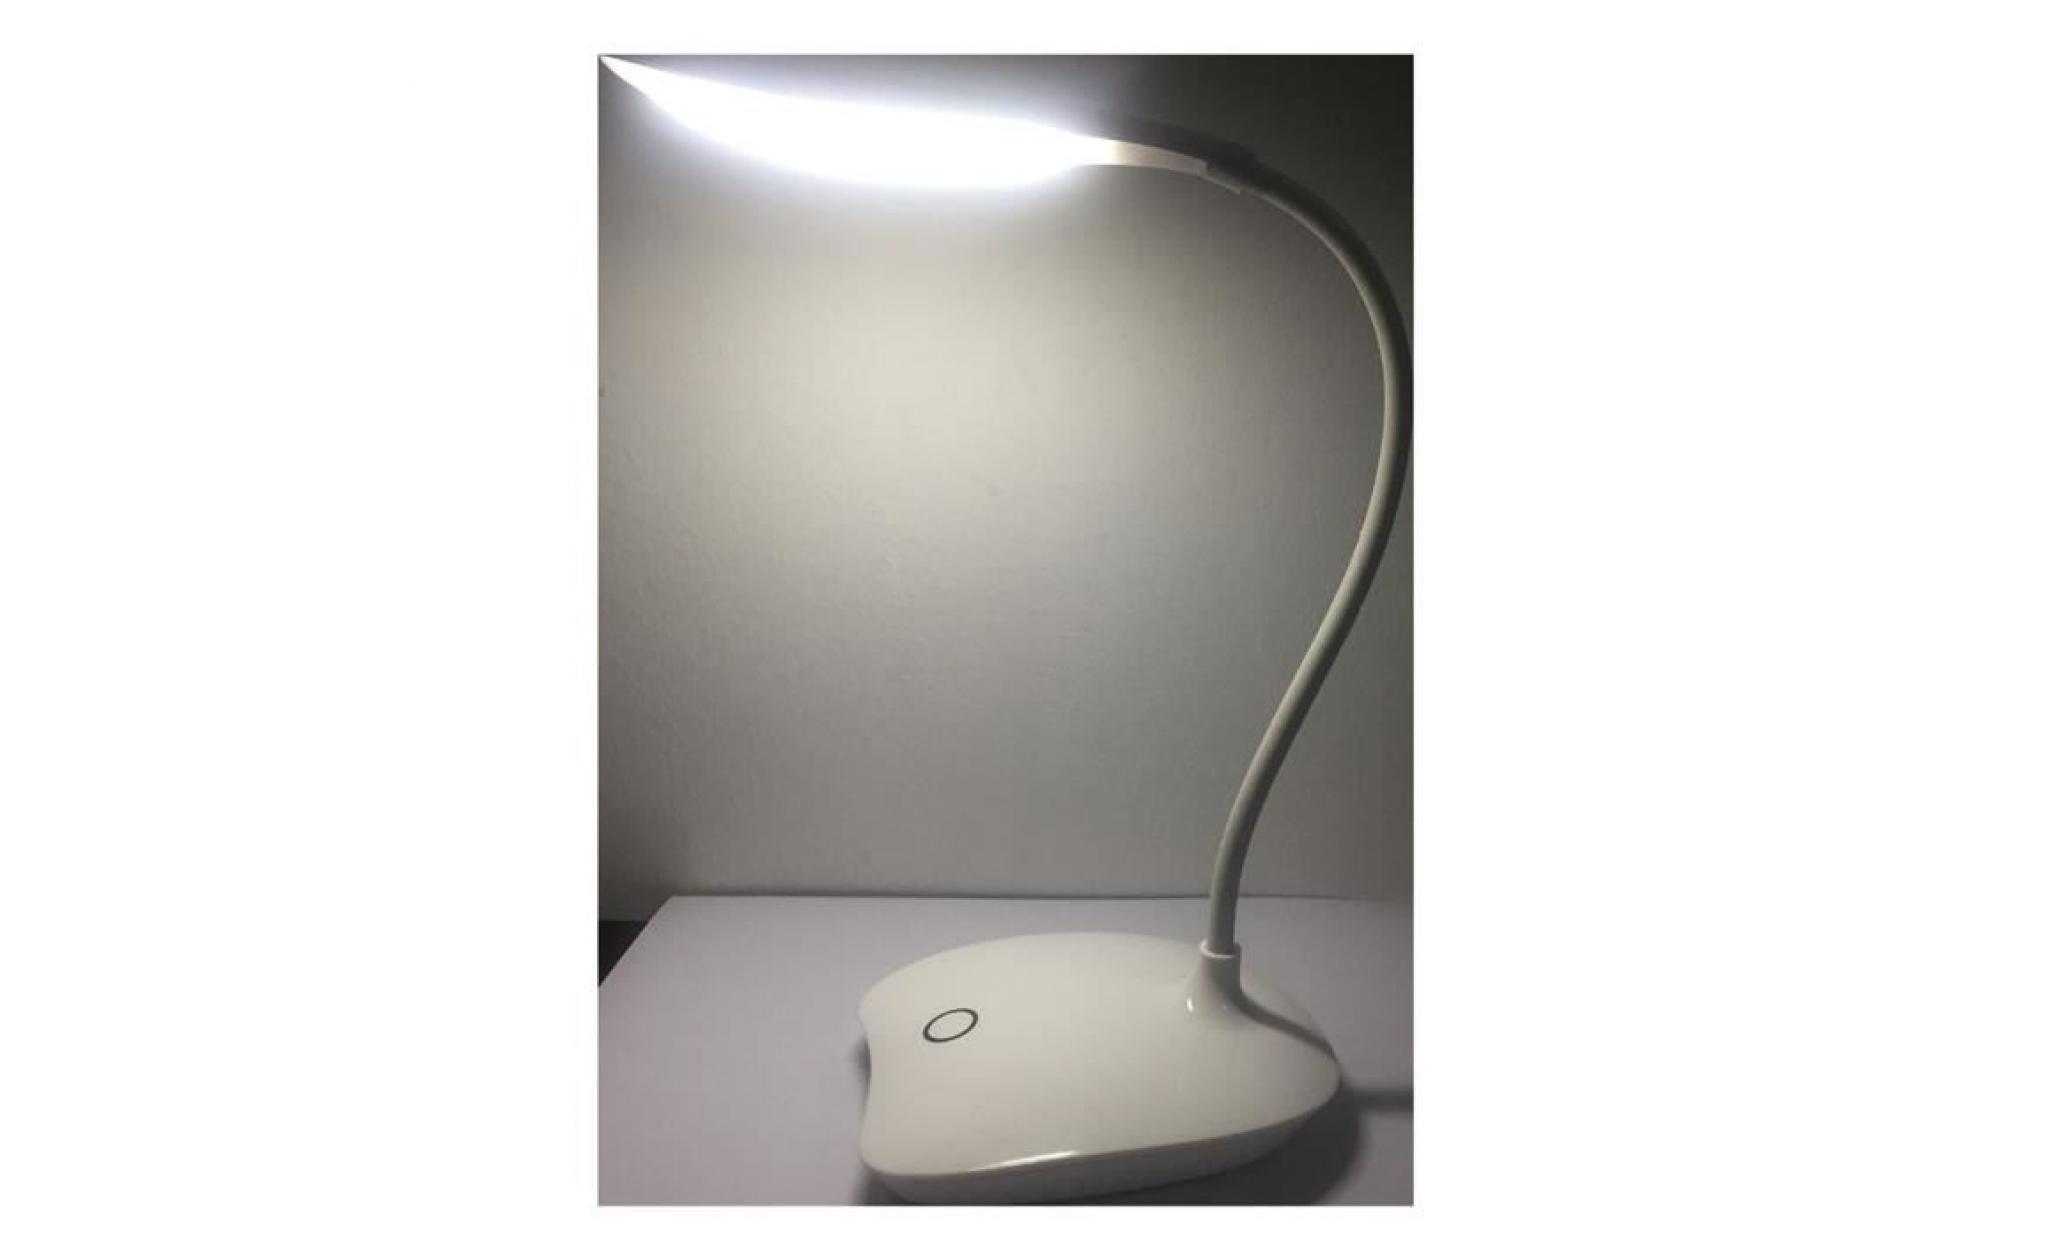 lampe de table led protection des yeux commande tactile 3 niveaux dimmable lampe de bureau rechargeable lampe de chevet pas cher